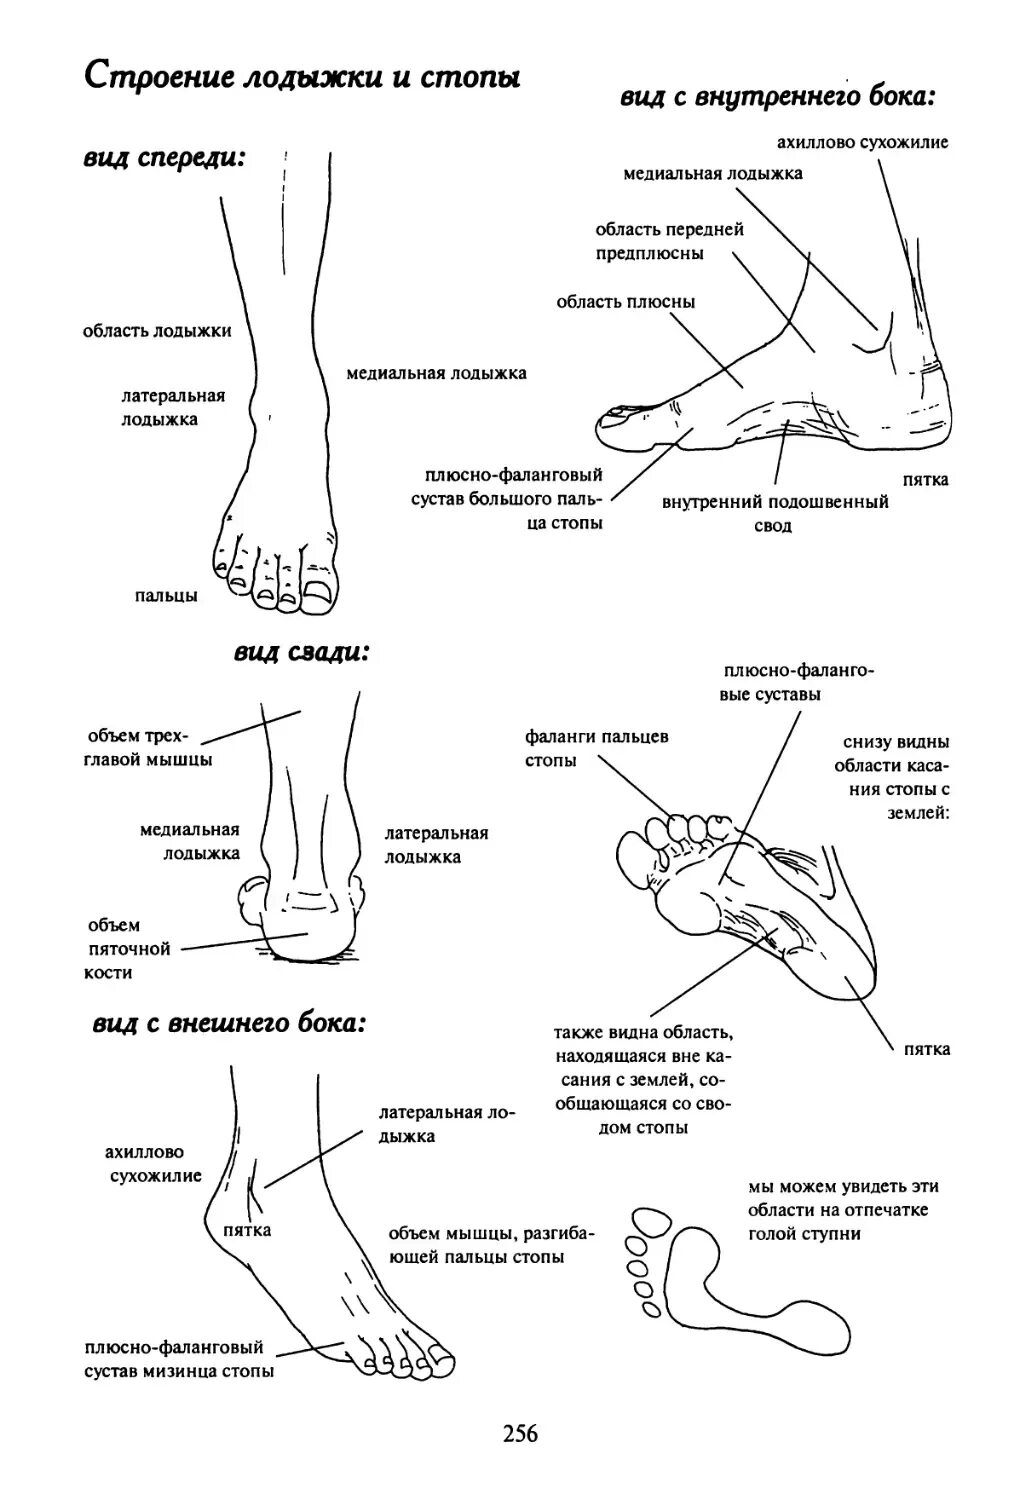 Почему болит кость ноги спереди. Строение стопы ноги снизу. Как называются части стопы человека. Как называется косточка на ноге сбоку. Анатомия человека медиальная лодыжка.